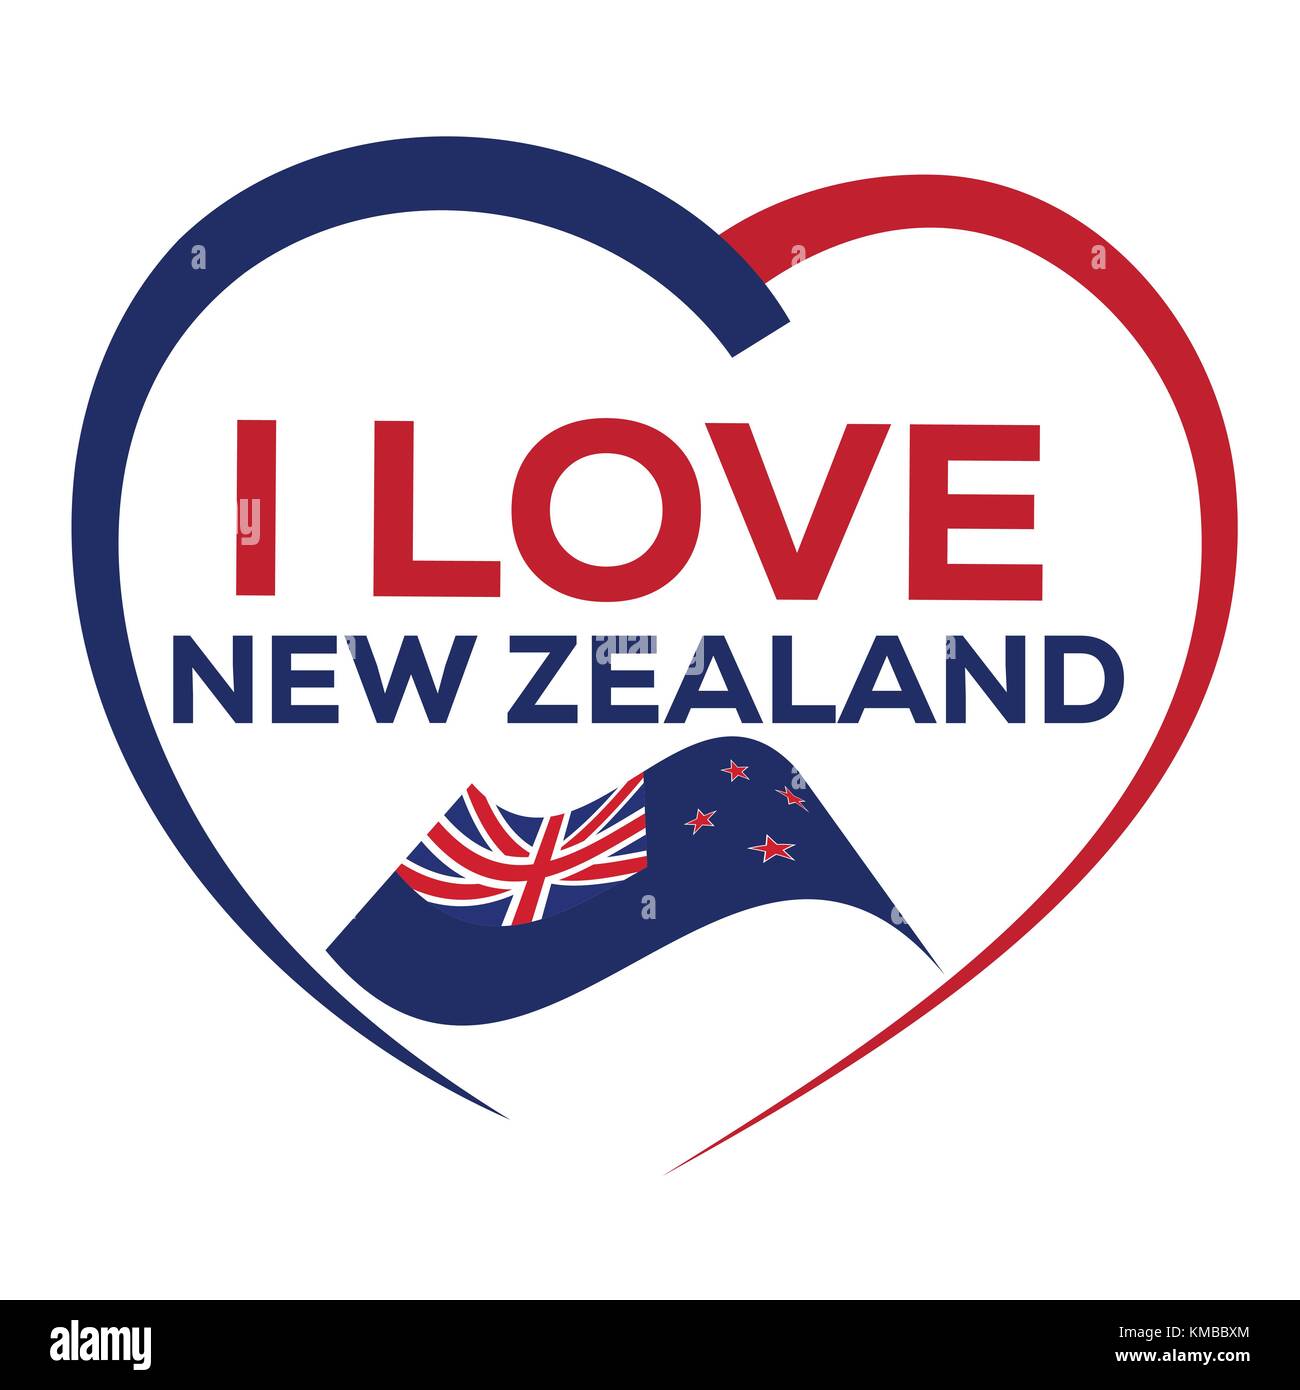 J'aime new zealand avec contours de cœur et d'un drapeau de la Nouvelle-Zélande, de l'icône concevoir, isolé sur fond blanc. Illustration de Vecteur